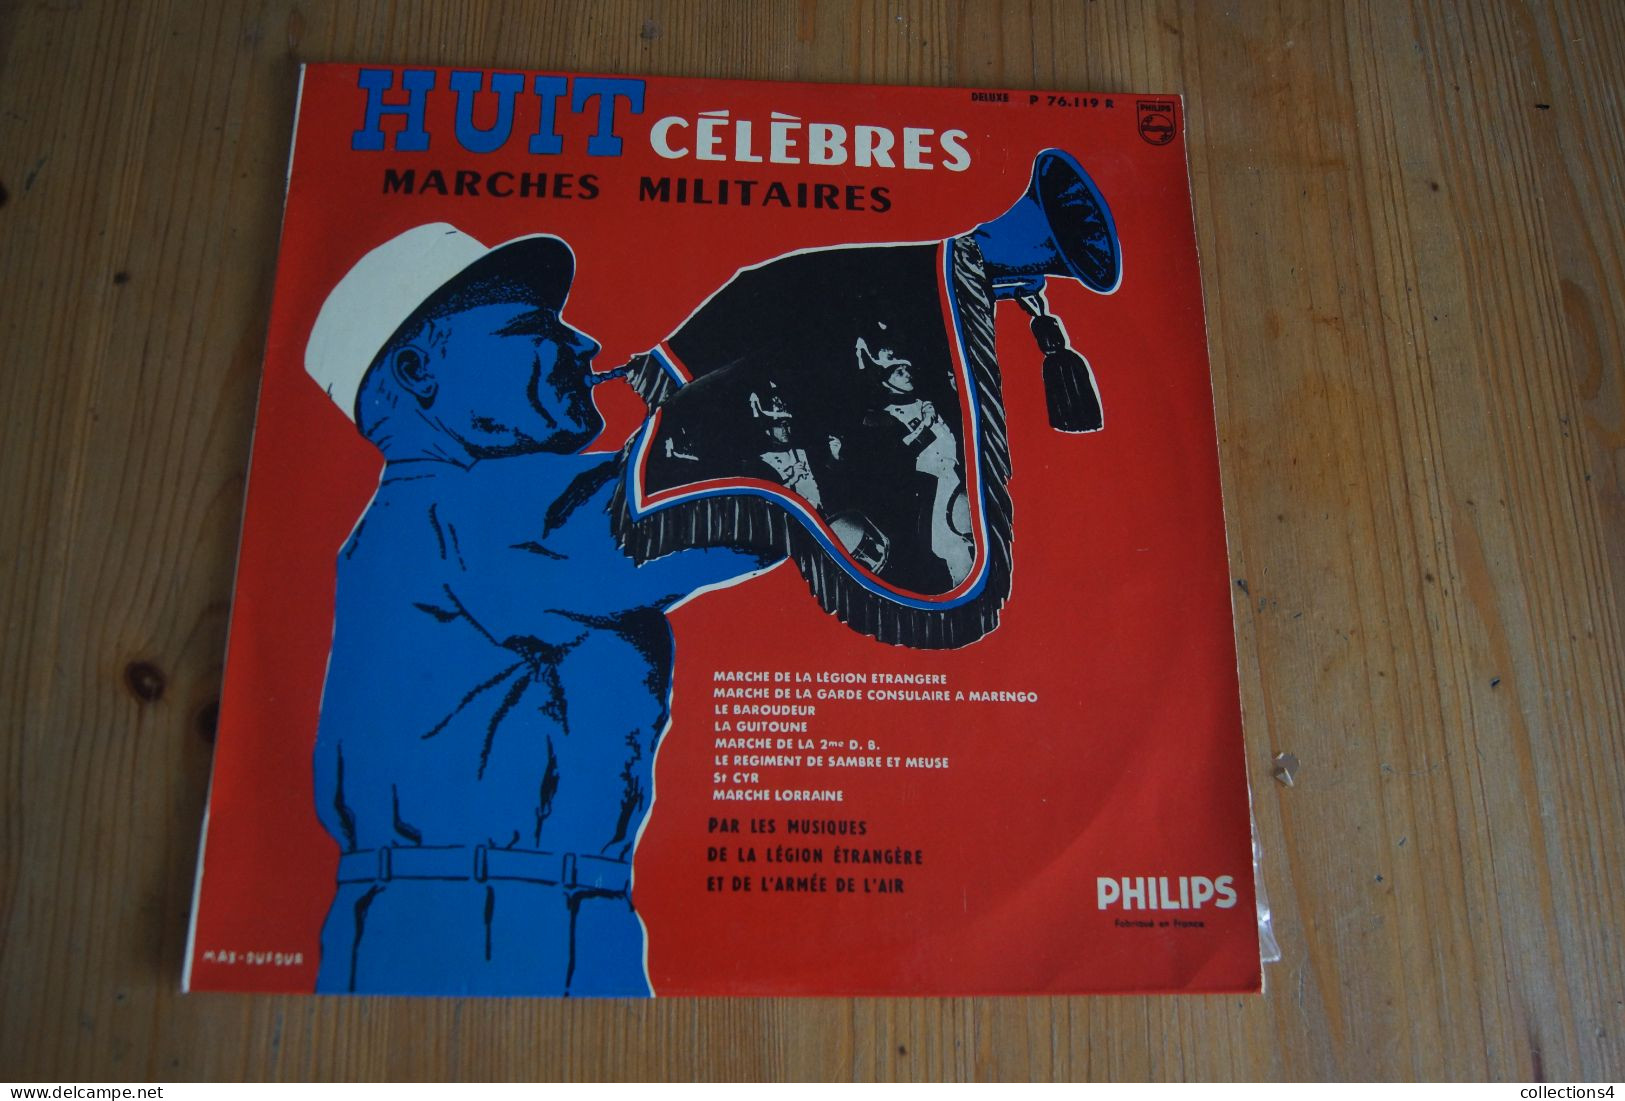 LEGION ETRANGERE ET ARMEE DE L AIR HUIT CELEBRES MARCHES MILITAIRES 25 CM 1959 - Other - French Music